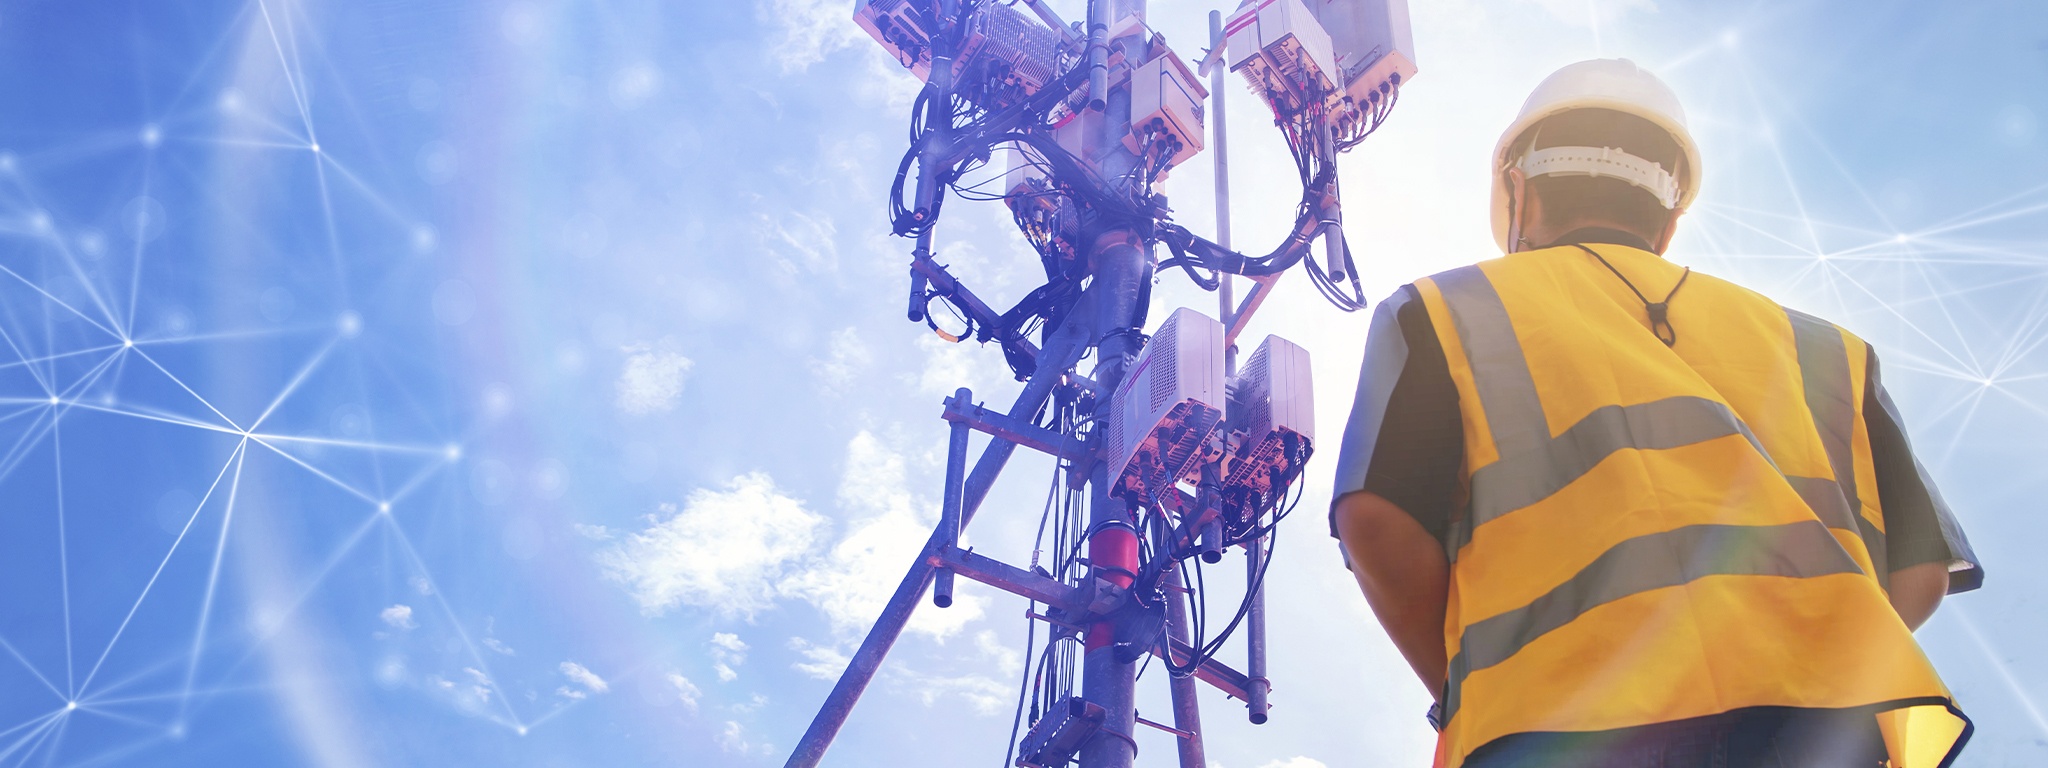 Widok z tyłu na inżyniera w kasku pracującego w terenie, przed którym stoi wieża telekomunikacyjna